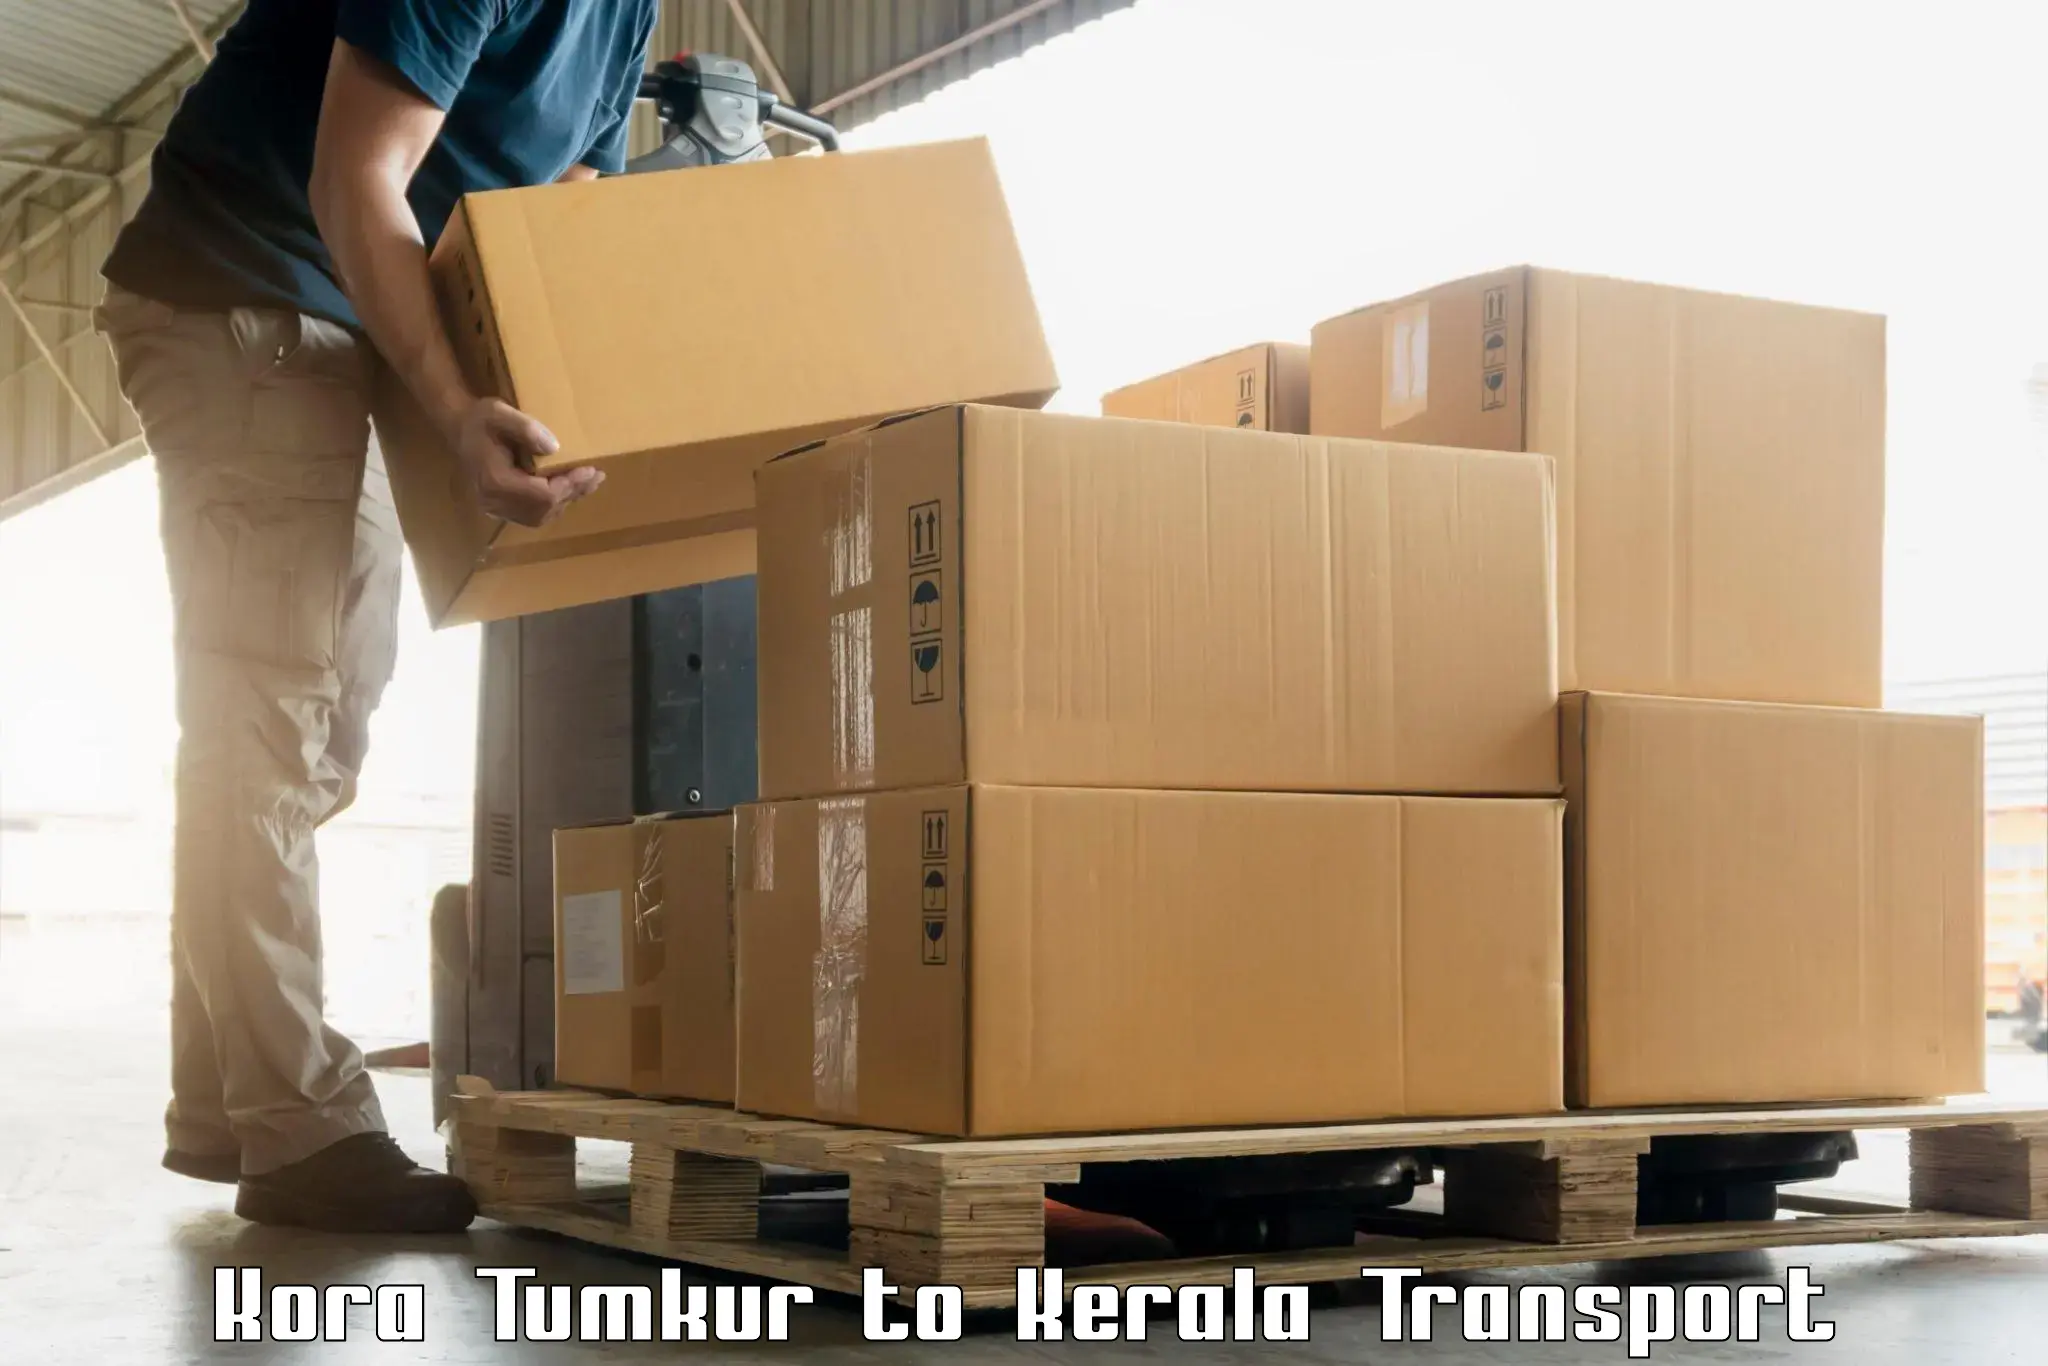 Online transport booking Kora Tumkur to Nochad